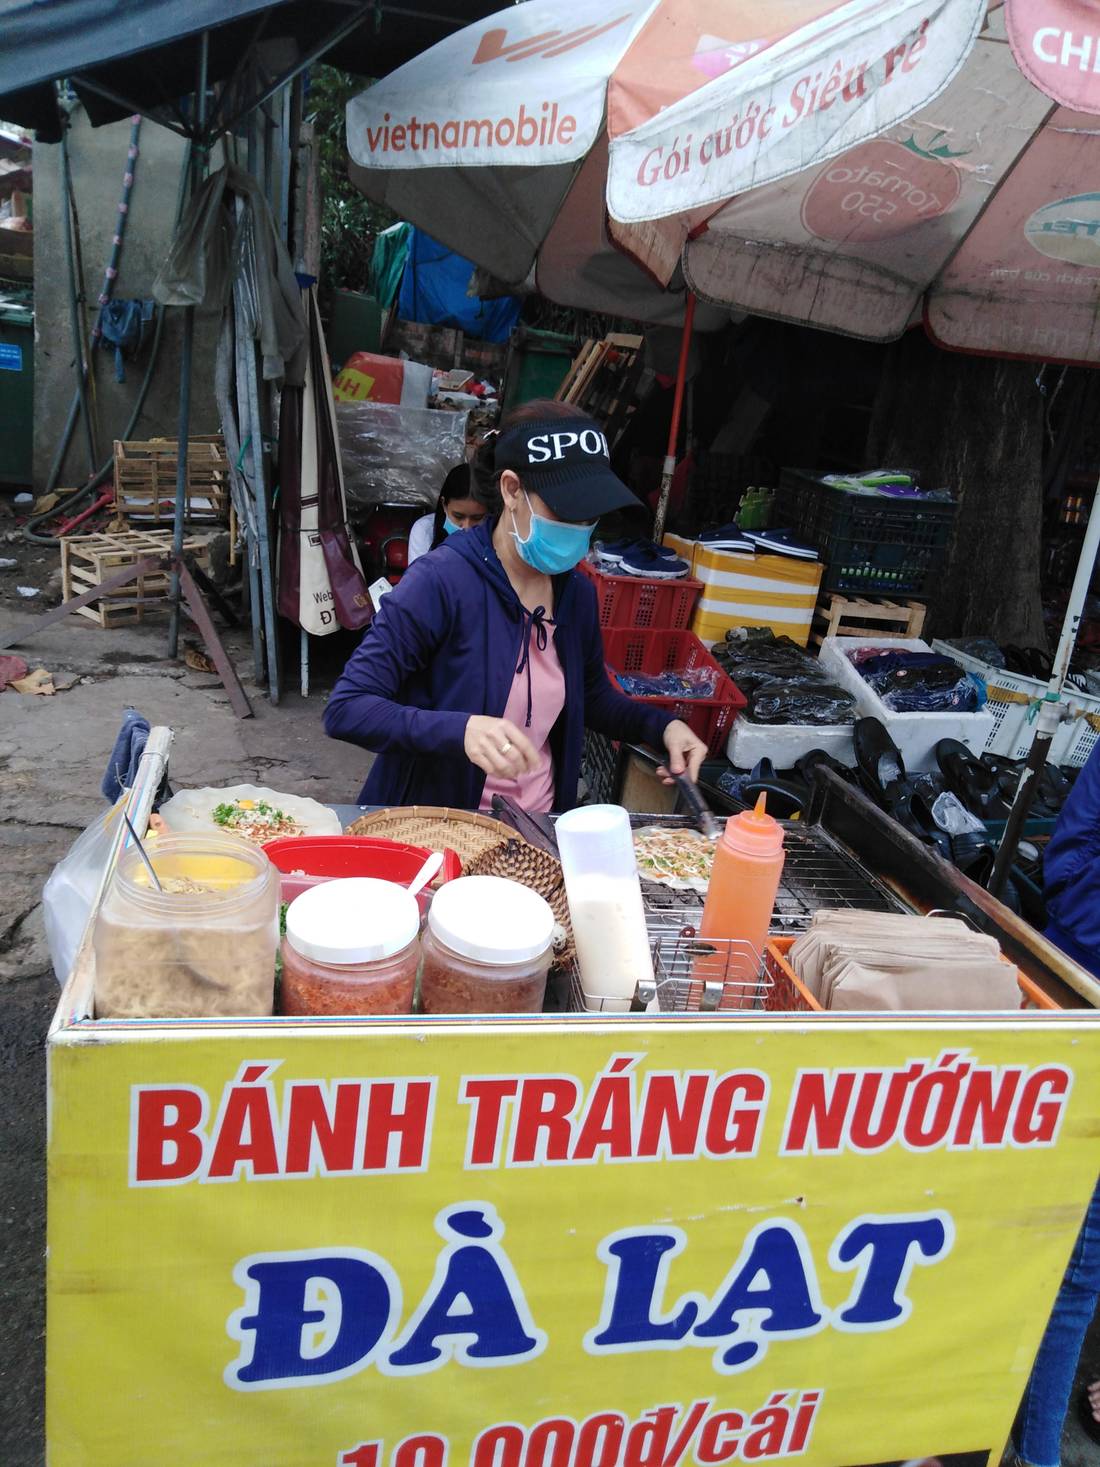 Banh Trang Nuong